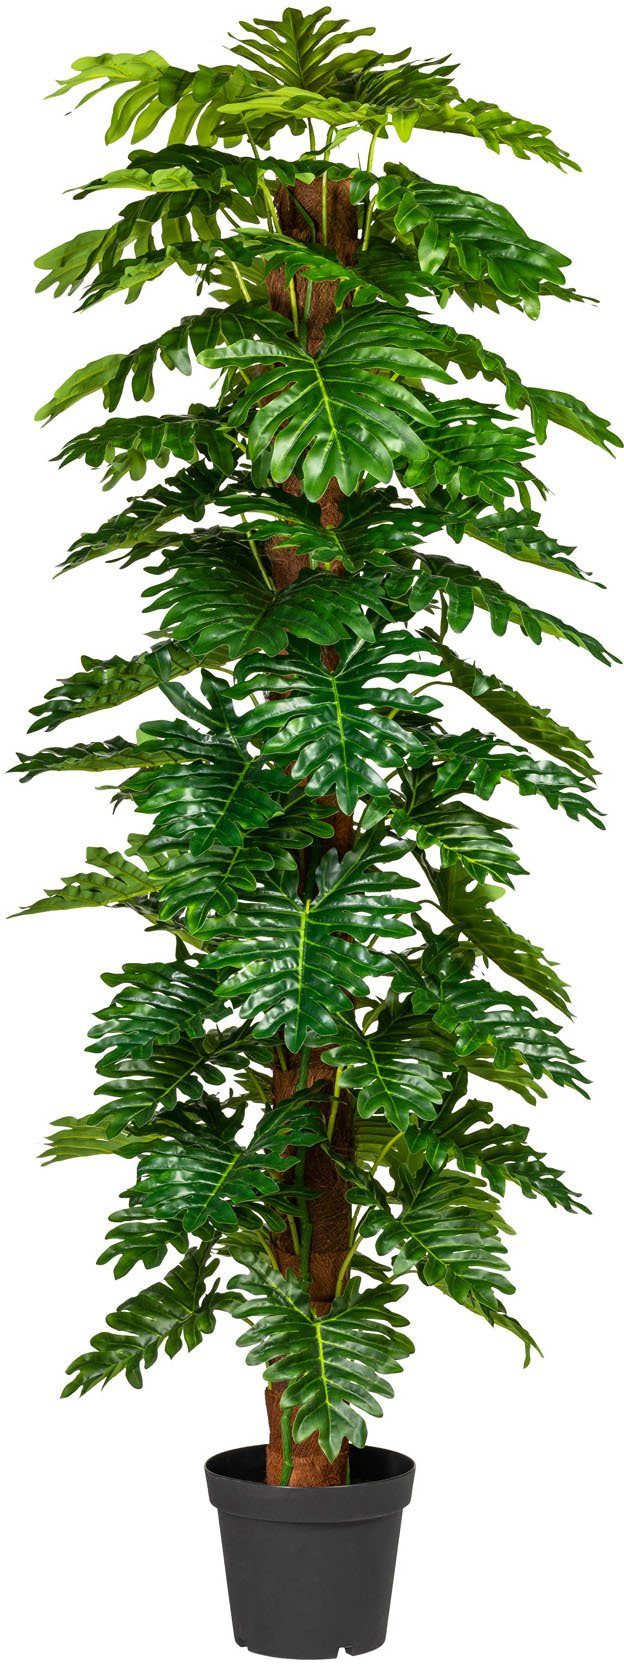 green, Höhe Grünpflanze, 190 cm Künstliche Monsterapflanze Creativ Zimmerpflanze